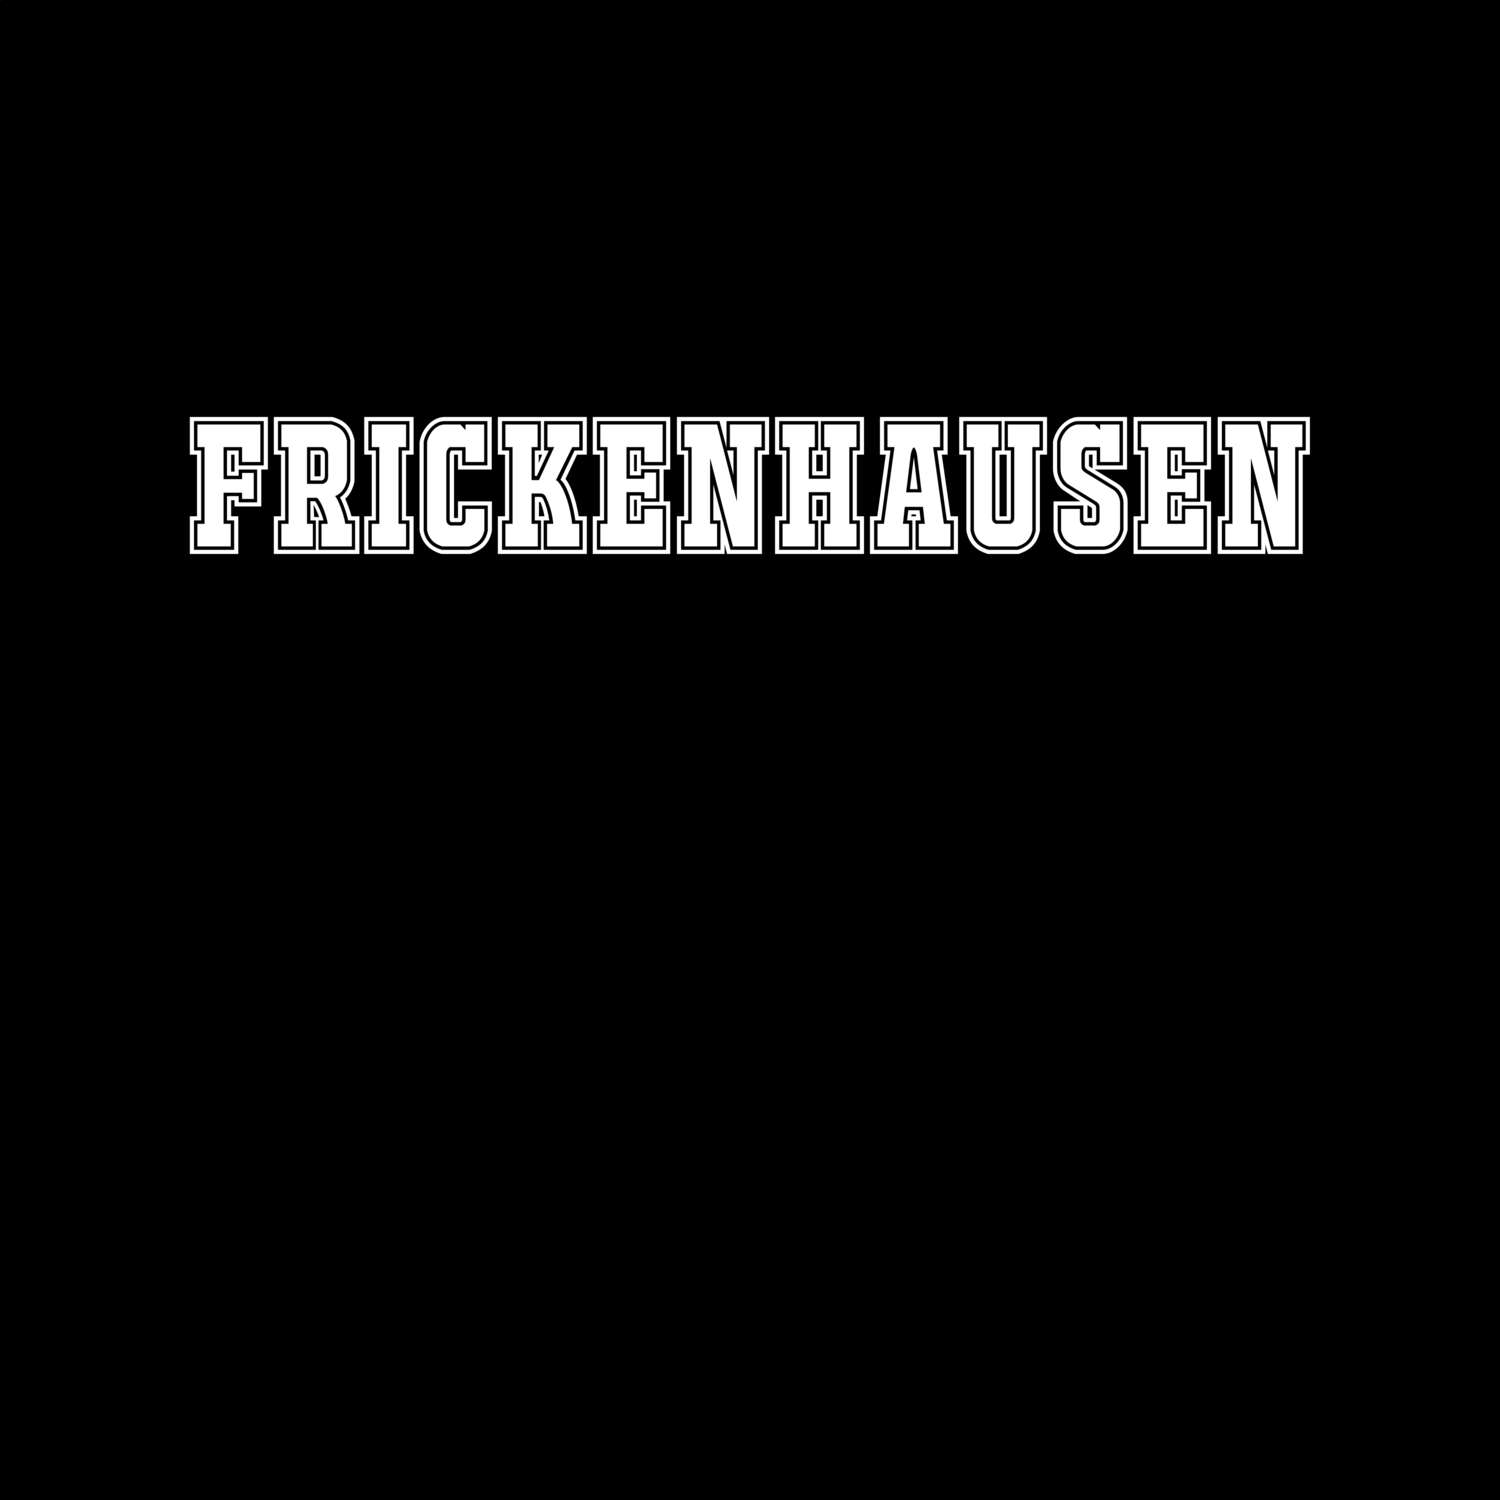 Frickenhausen T-Shirt »Classic«